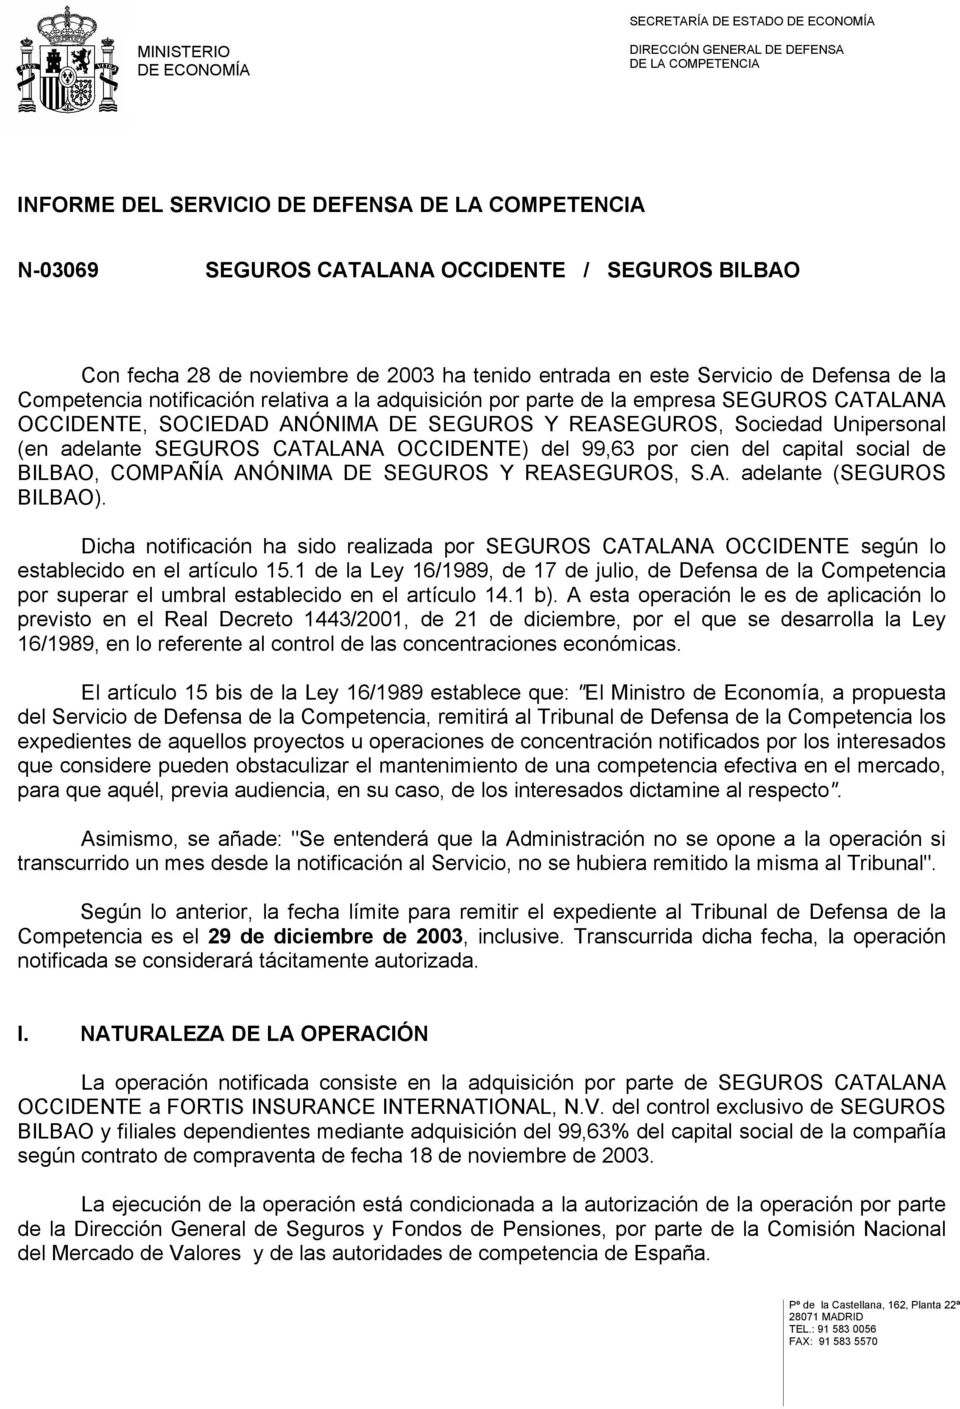 OCCIDENTE) del 99,63 por cien del capital social de BILBAO, COMPAÑÍA ANÓNIMA DE SEGUROS Y REASEGUROS, S.A. adelante (SEGUROS BILBAO).